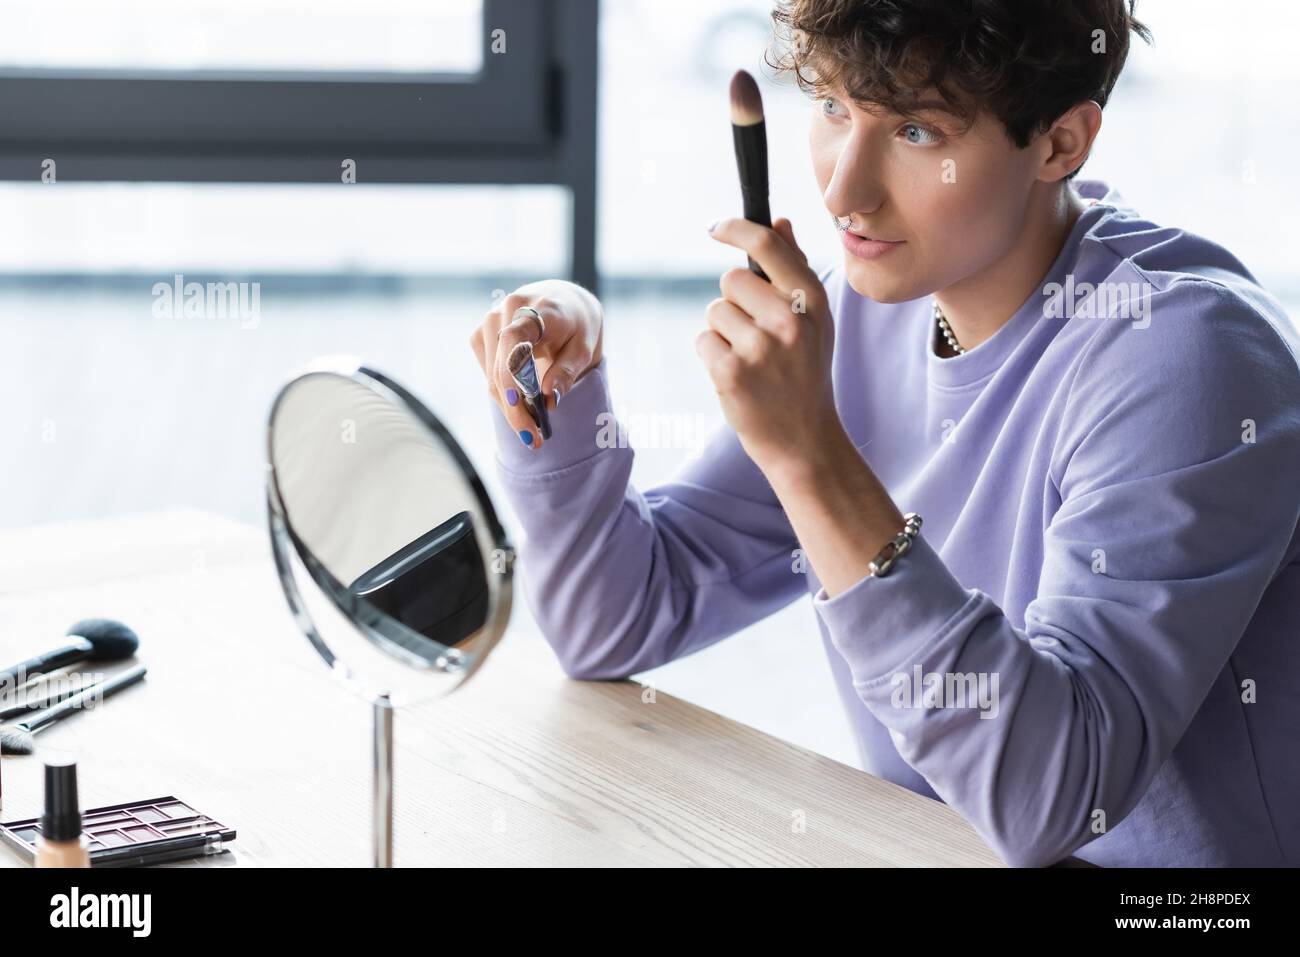 Junge Transgender Make-up-Künstler hält kosmetische Pinsel in der Nähe des Spiegels, Stock Bild Stockfoto